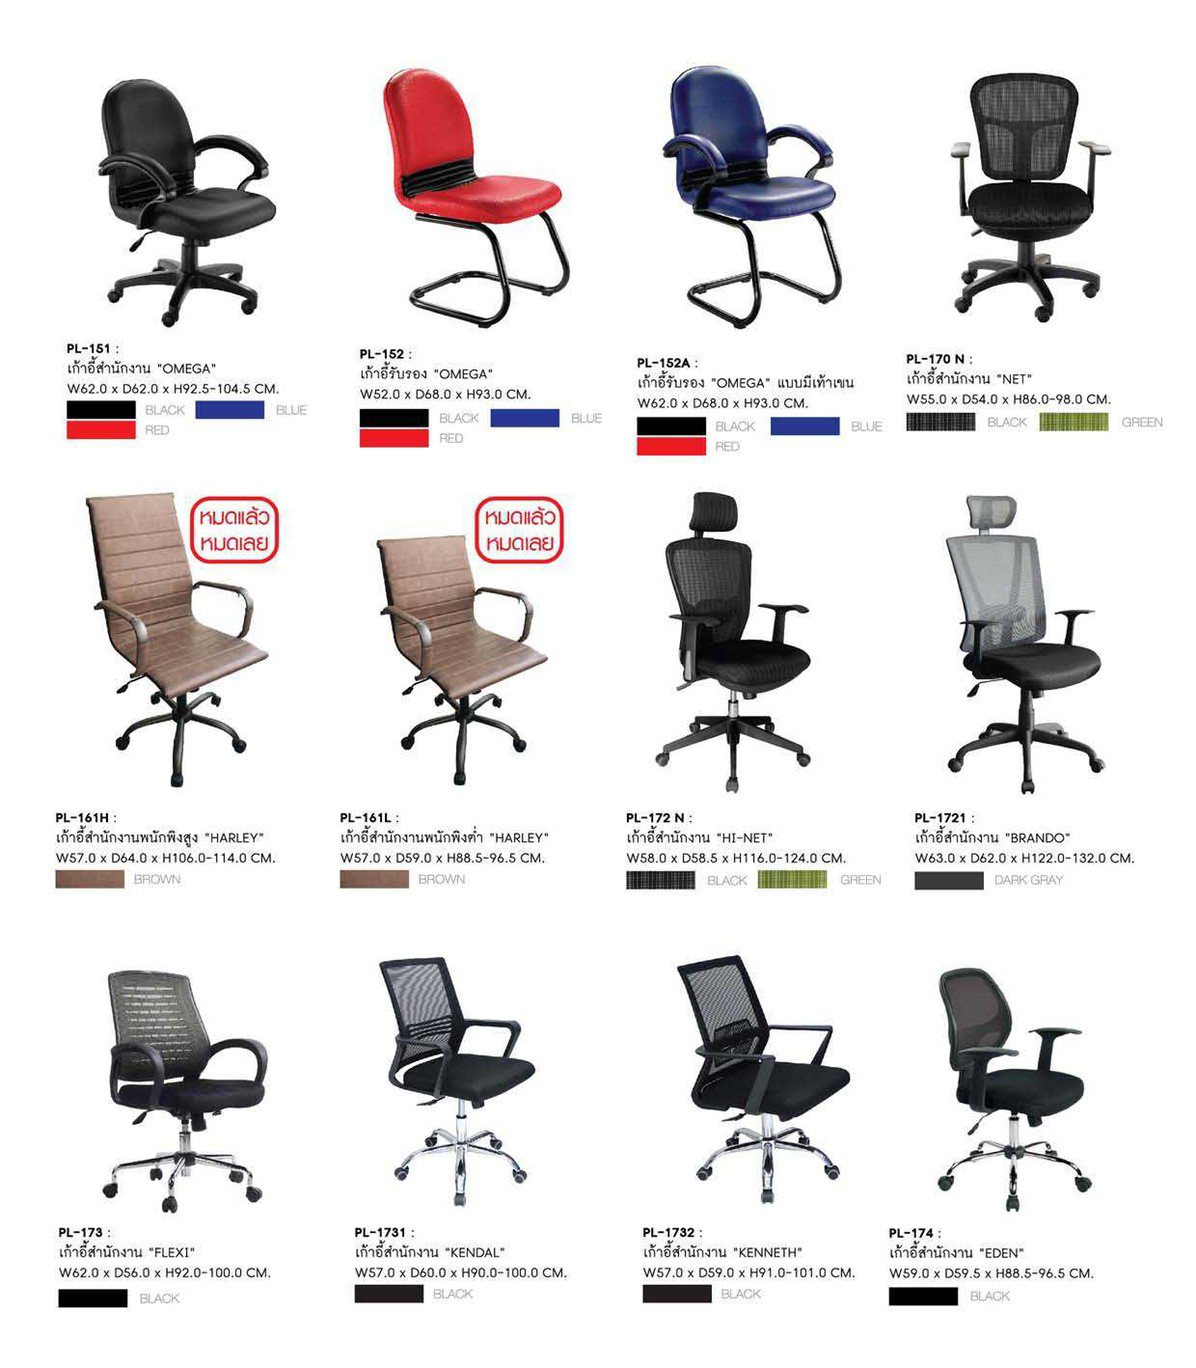 42077::PL-1732::เก้าอี้สำนักงาน KENNETH รุ่น PL1732 ขนาด ก570Xล590Xส910-101 มม. โครงพิงเป็น PP ขึ้นรูปหุ้มด้วยผ้าตาข่ายสีดำ ระบายอากาศได้ดี ชัวร์ เก้าอี้สำนักงาน